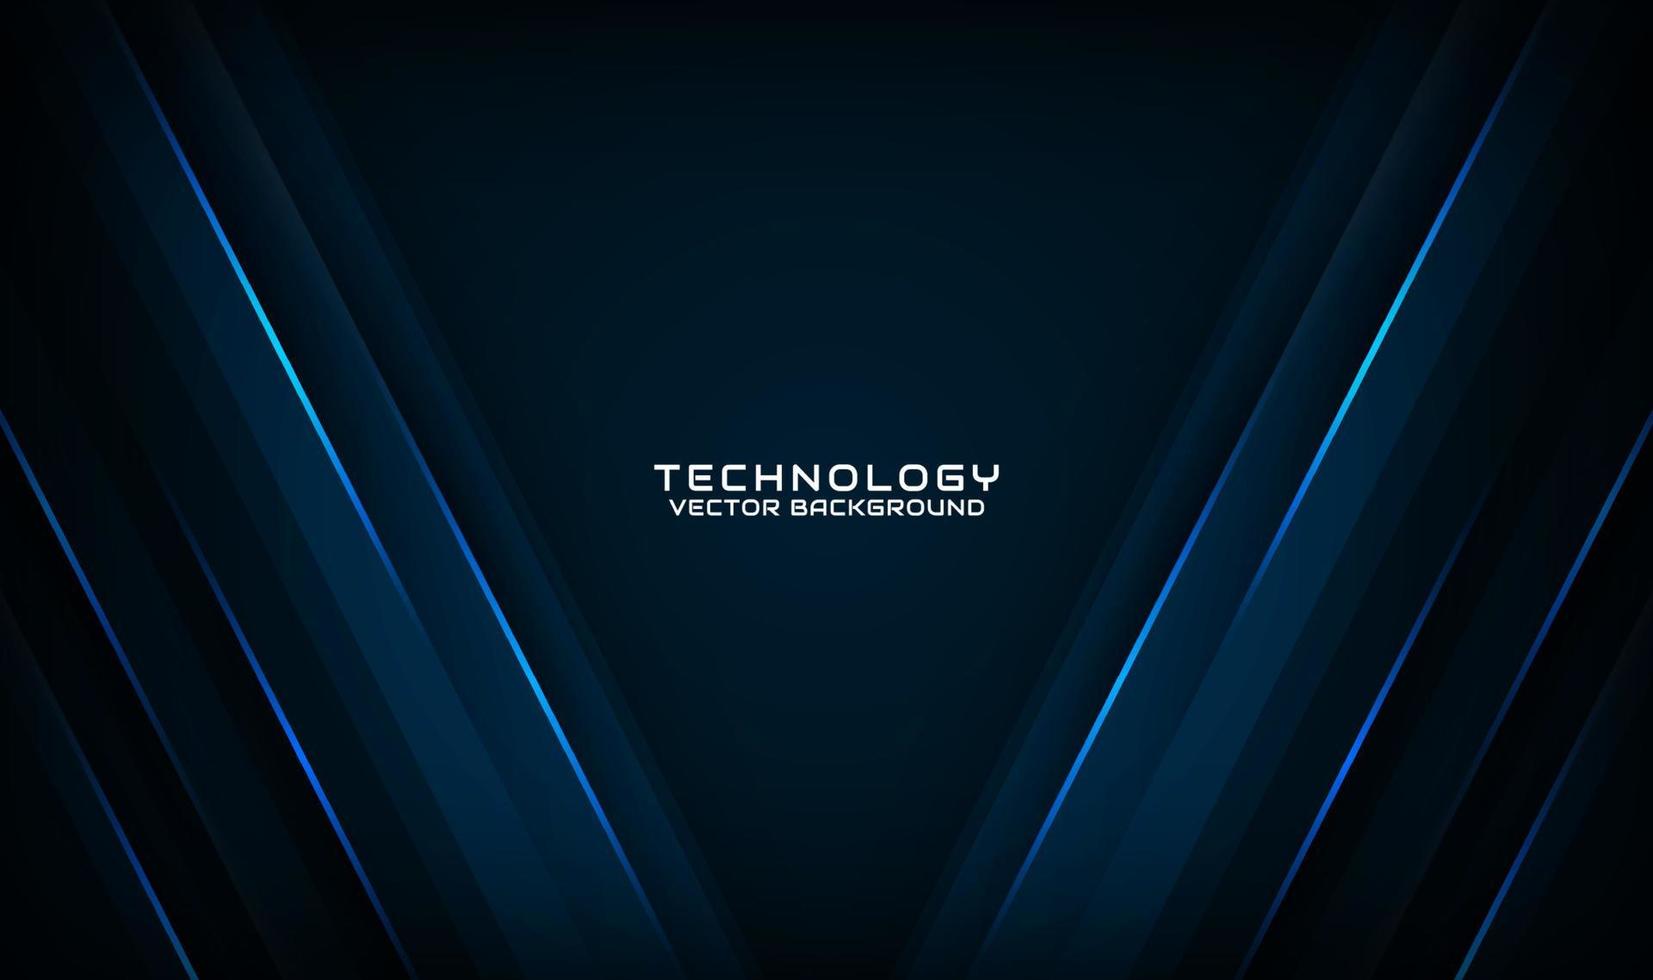 Capa de superposición de fondo abstracto de tecnología azul 3d en espacio oscuro con decoración de efecto de línea clara. elemento de diseño gráfico concepto de estilo futuro para banner, volante, tarjeta, folleto o página de inicio vector